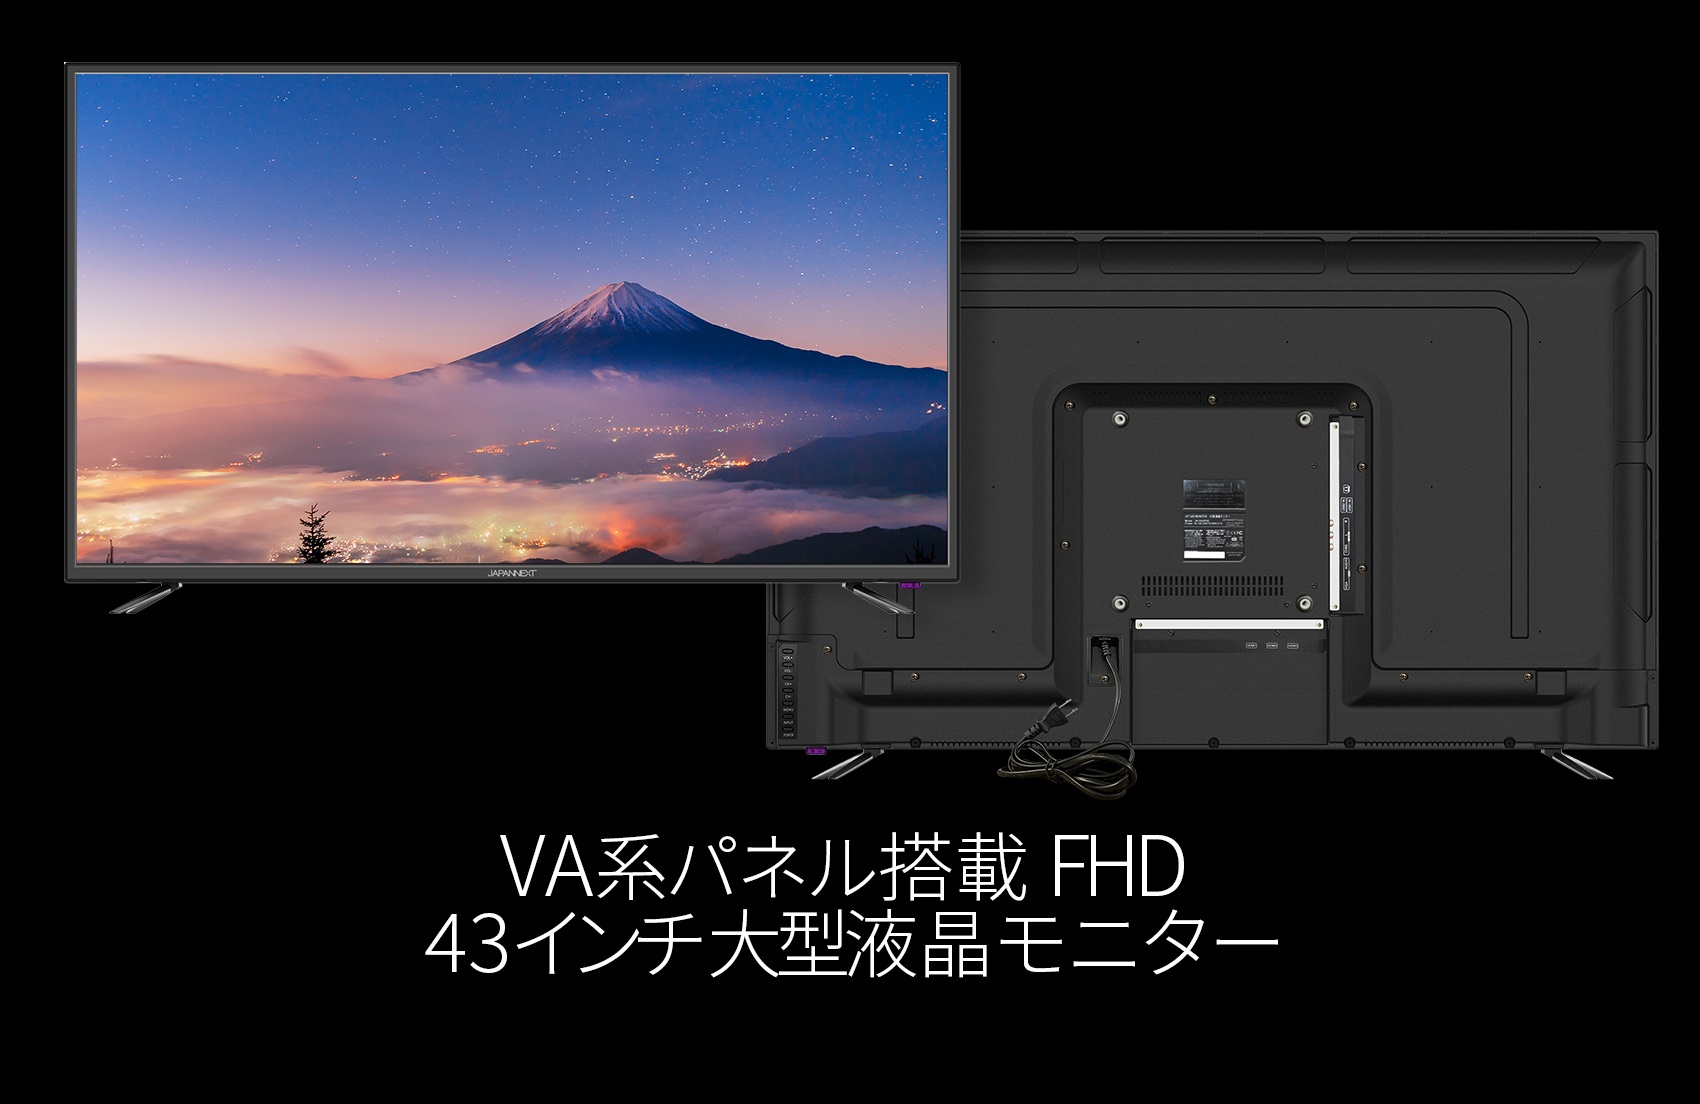 Japannext Jn V430fhd Vaパネル搭載 43インチ Fhd液晶ディスプレイ Vaパネル Fhd 19 1080 Hdmi Vga デジタルサイネージ Japannext 4k Wqhdなど超解像度 ゲーミング 曲面など特殊液晶モニター